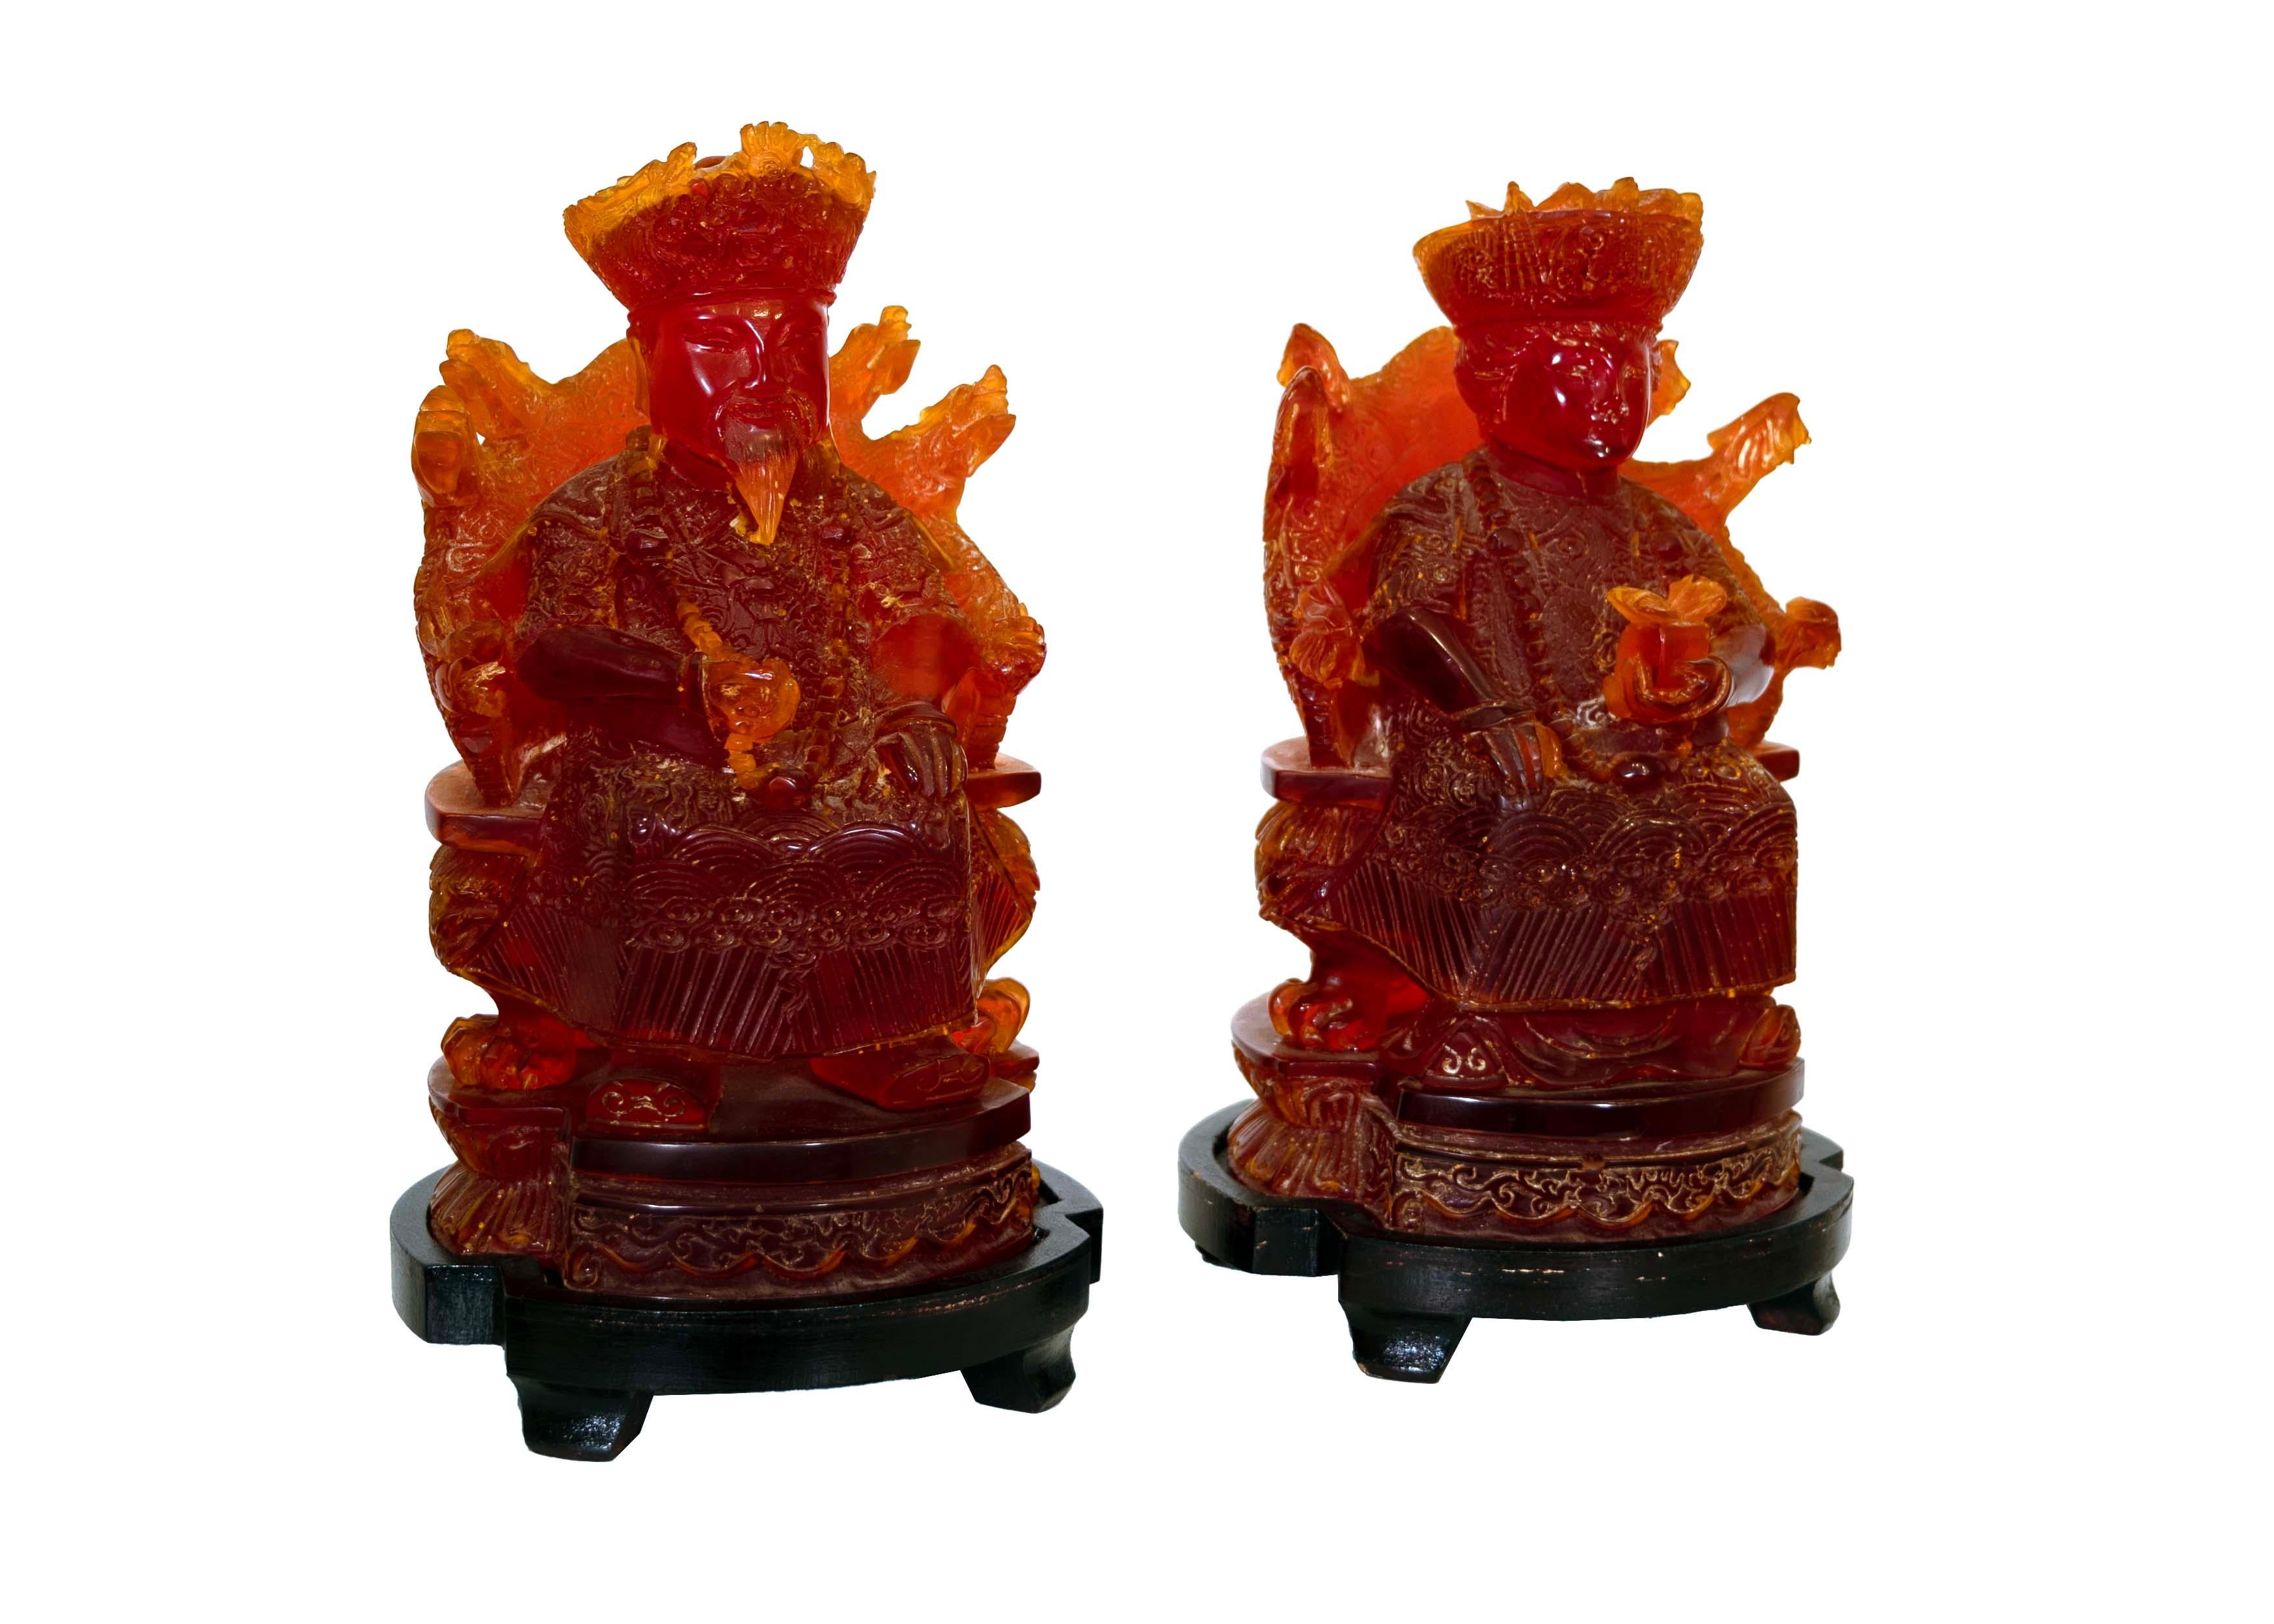 Tauchen Sie ein in die Pracht des kaiserlichen Chinas mit diesem fesselnden Paar von sitzenden Figuren, die meisterhaft aus Kirschharz gefertigt sind. Die Statuen sind mit aufwendigen Schnitzereien verziert, die die opulente Kleidung und das